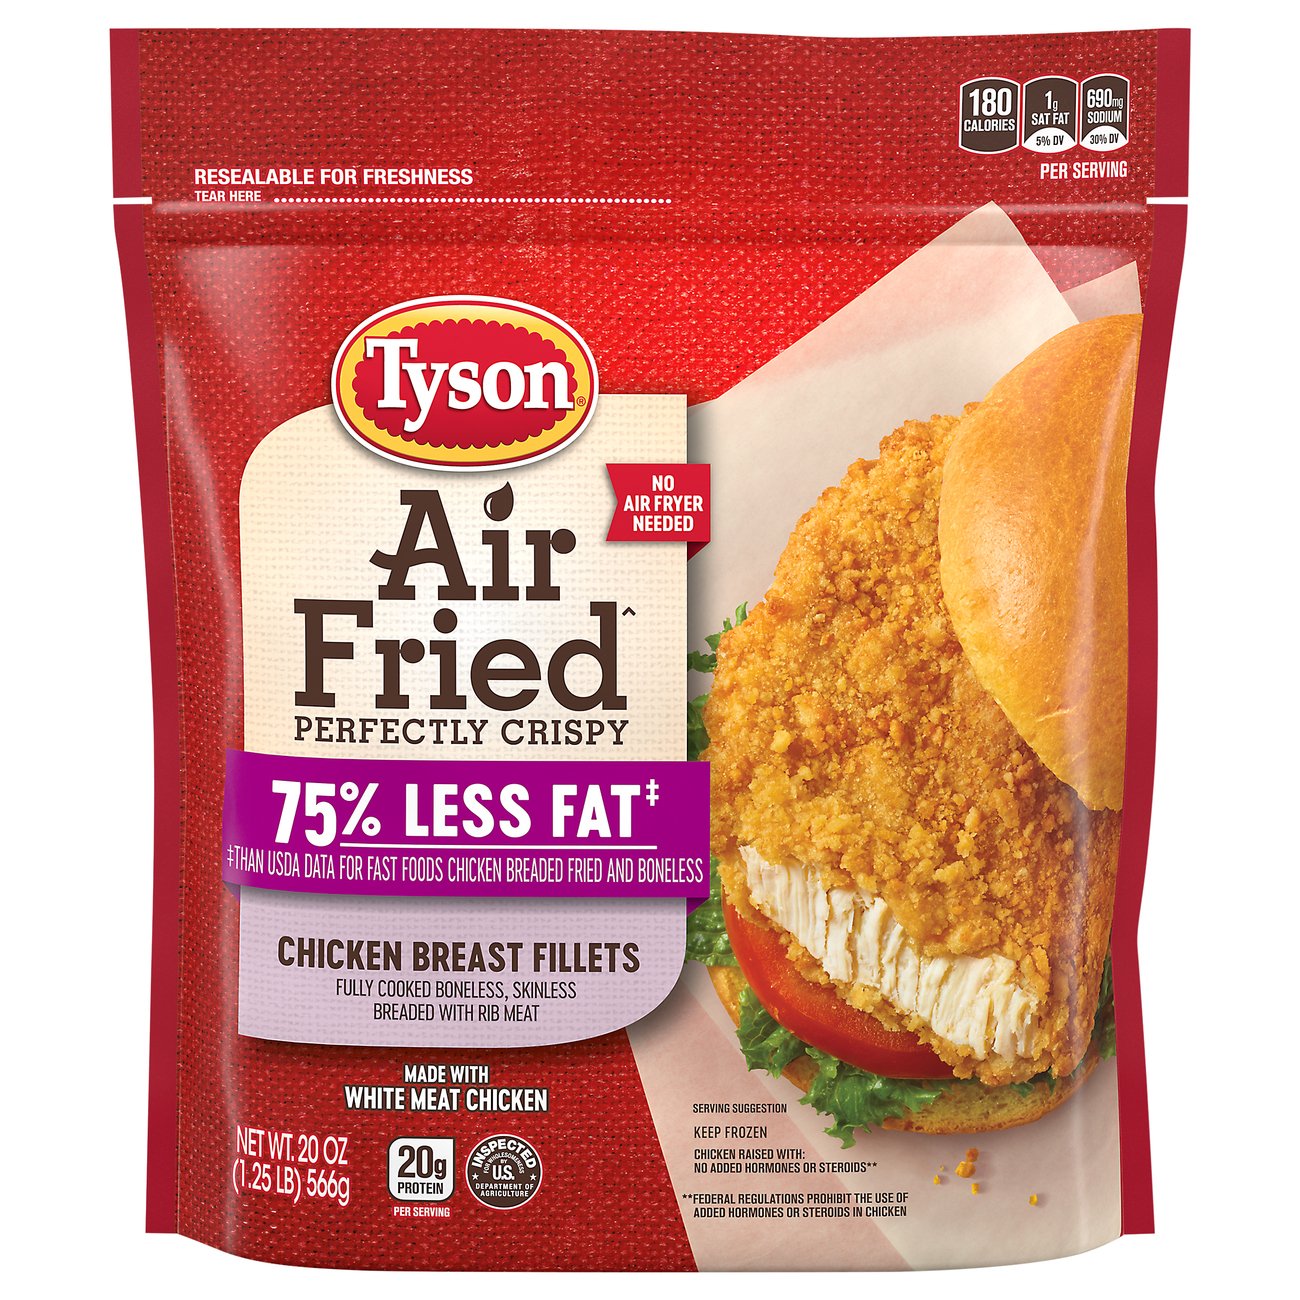 Tyson air fried chicken recall information